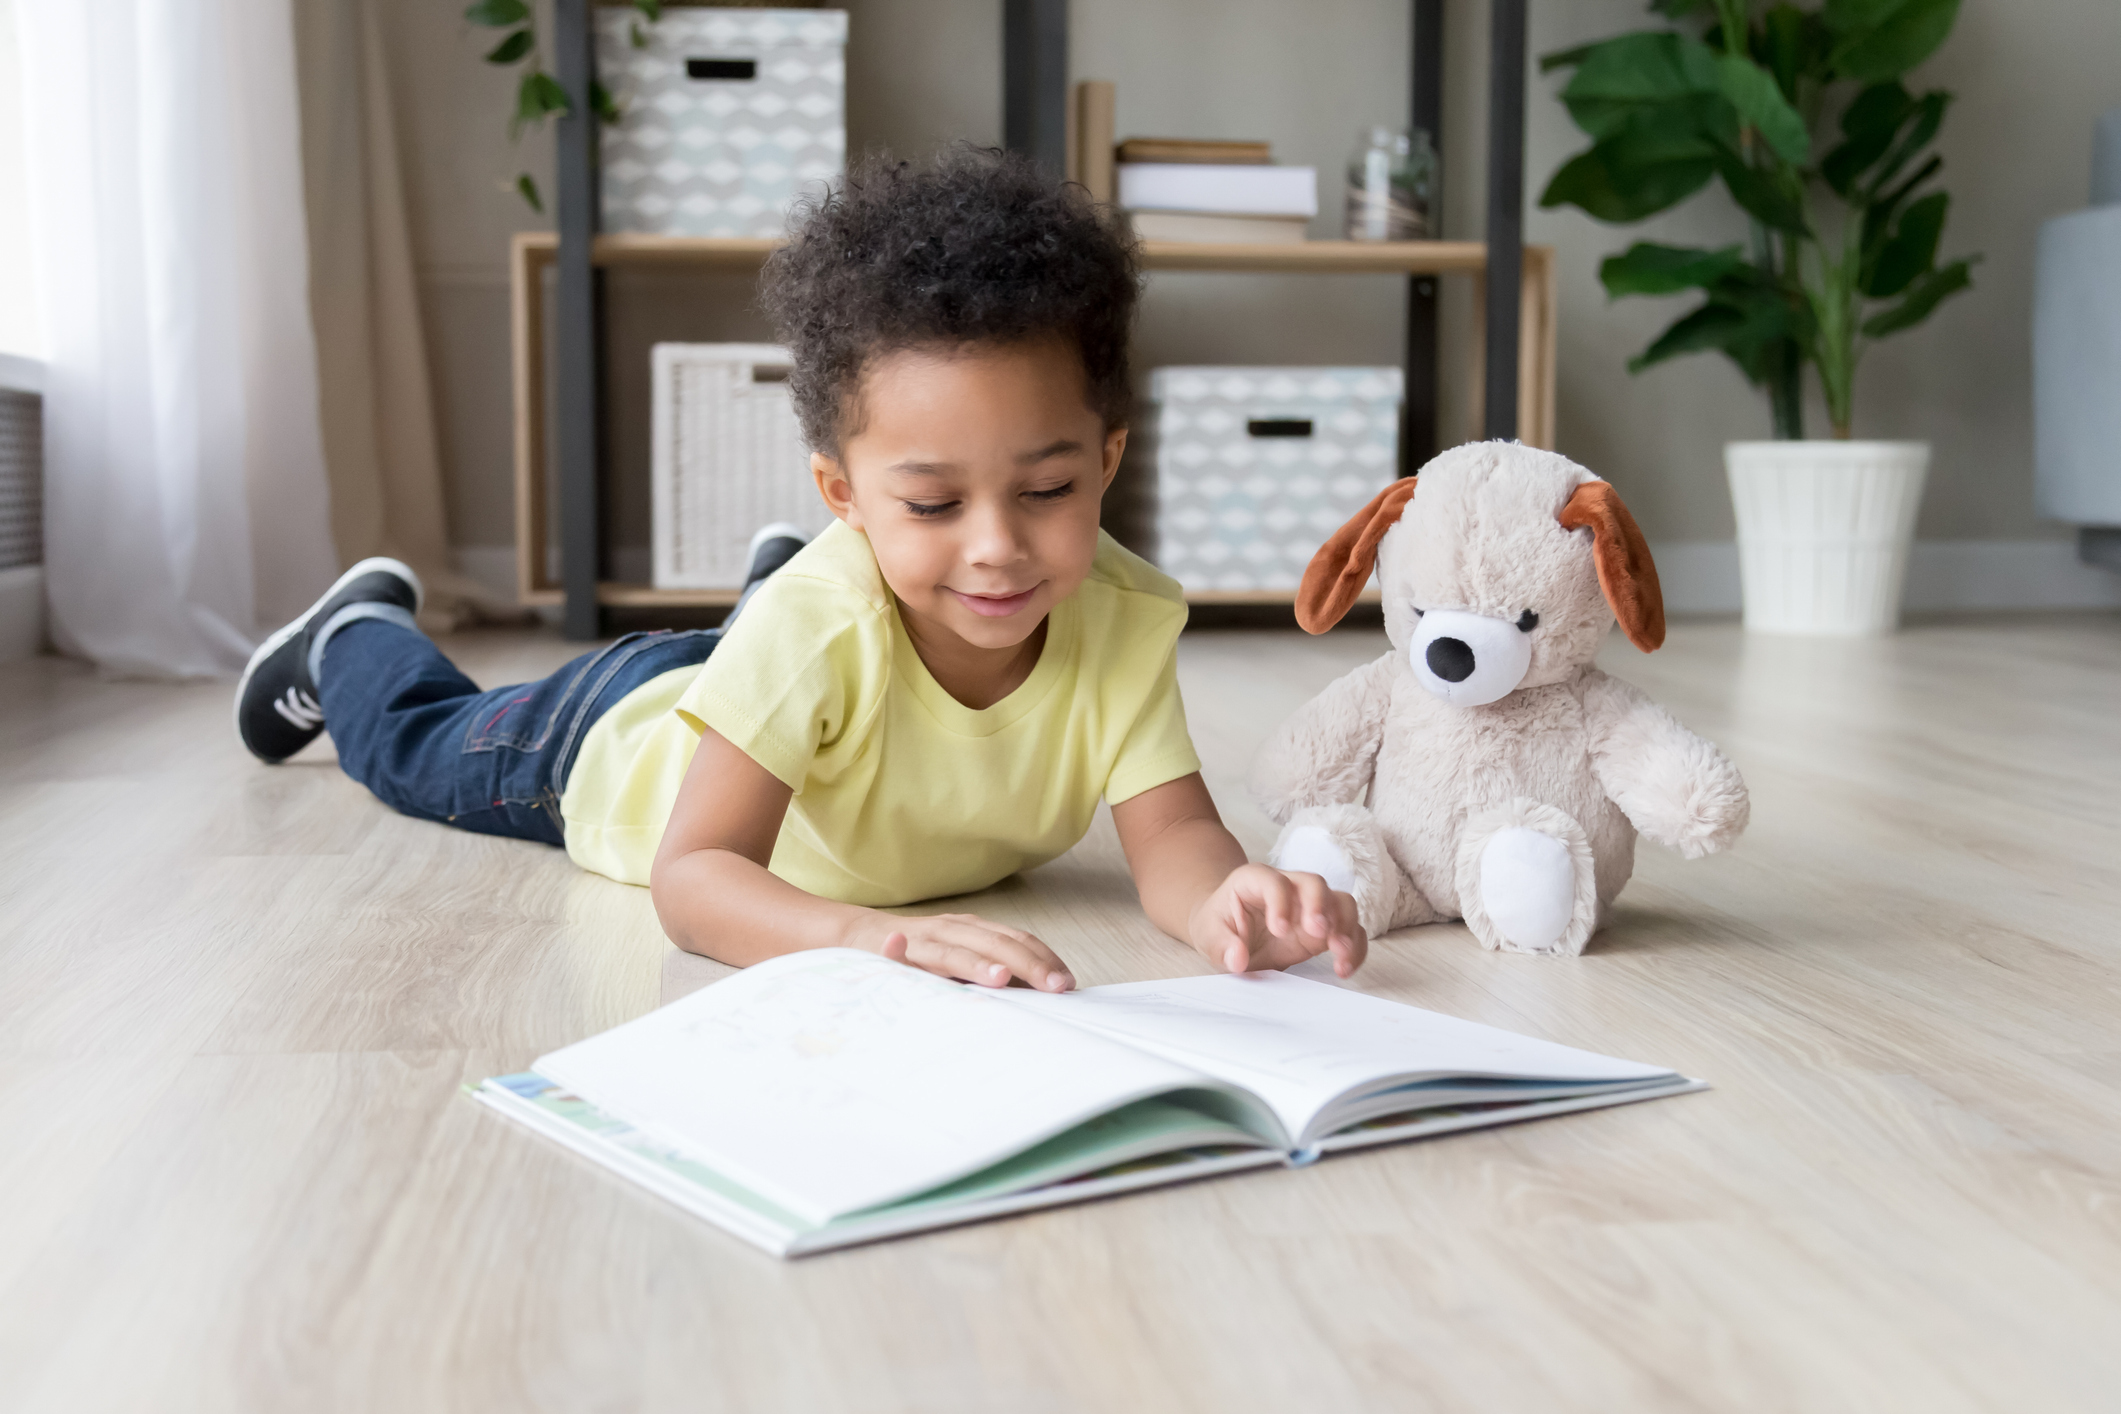 Criança pequena lendo livro sozinha deitada de barriga no chão. É um menino usando calça jeans e camiseta amarela, tem os cabelos pretos, curtos e crespos. Ao lado dele, há um cachorro de pelúcia sentado.